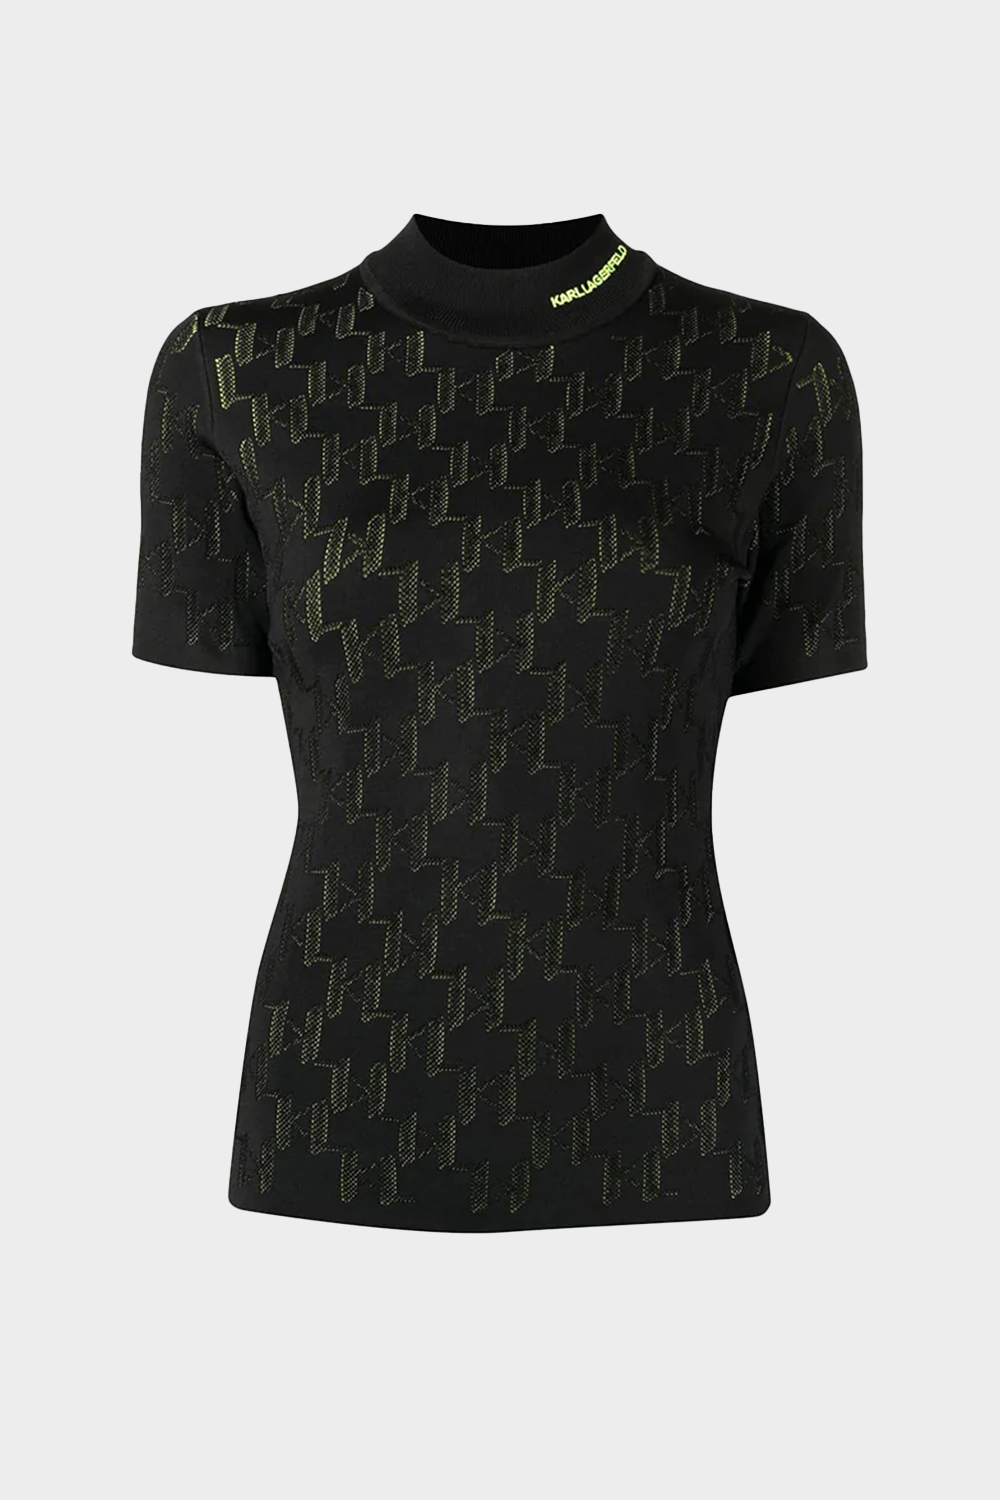 סריג גולף לנשים בצבע שחור KARL LAGERFELD Vendome online | ונדום .